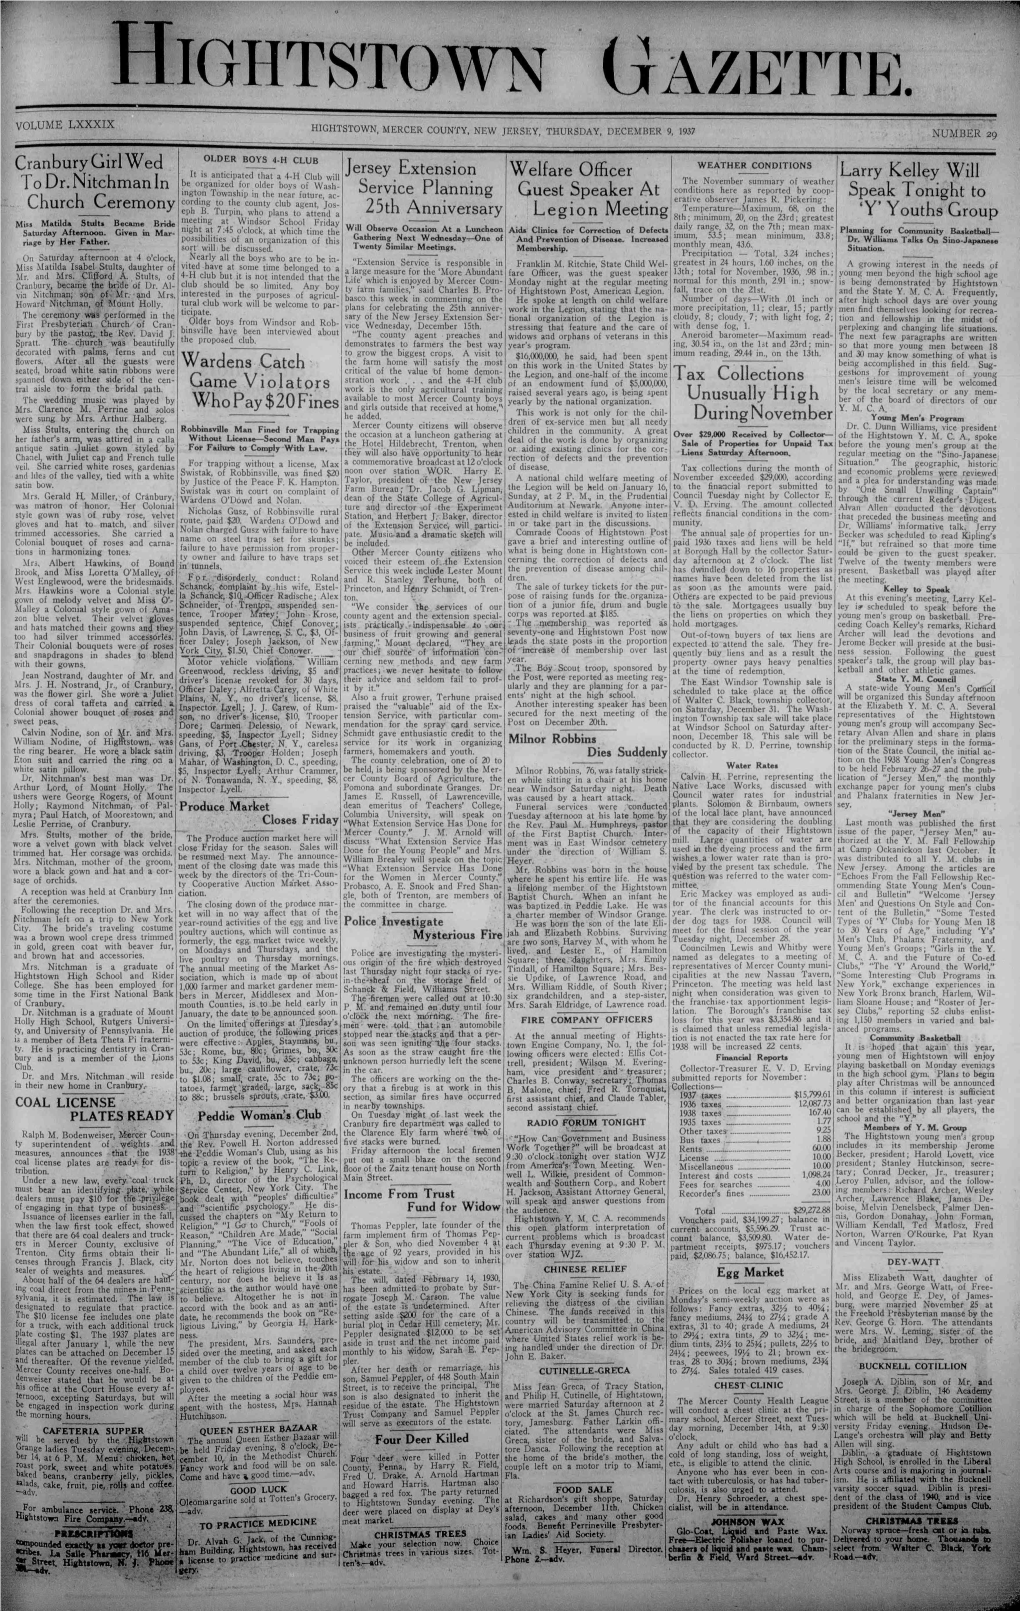 Hightstown Gazette. Hightstown, Mercer County, New Jersey, Thursday, December 9, 1937